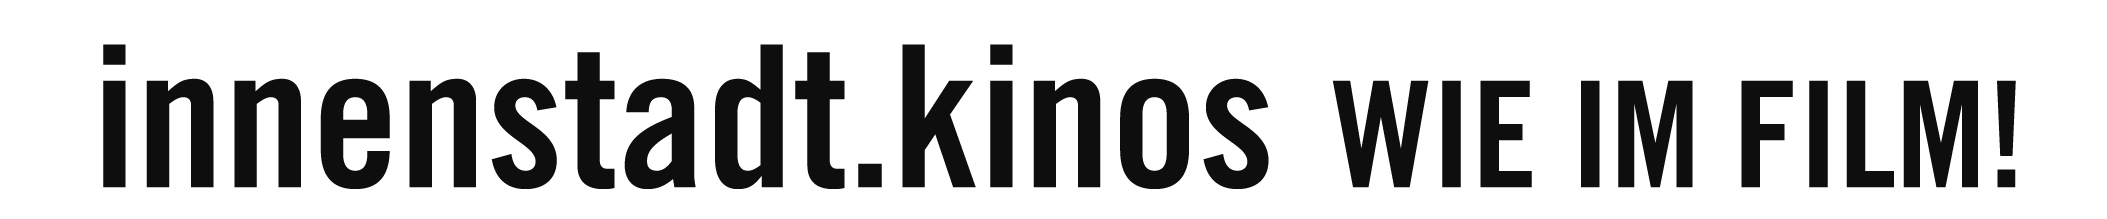 Innenstadt-Kinos-Logo-Claim